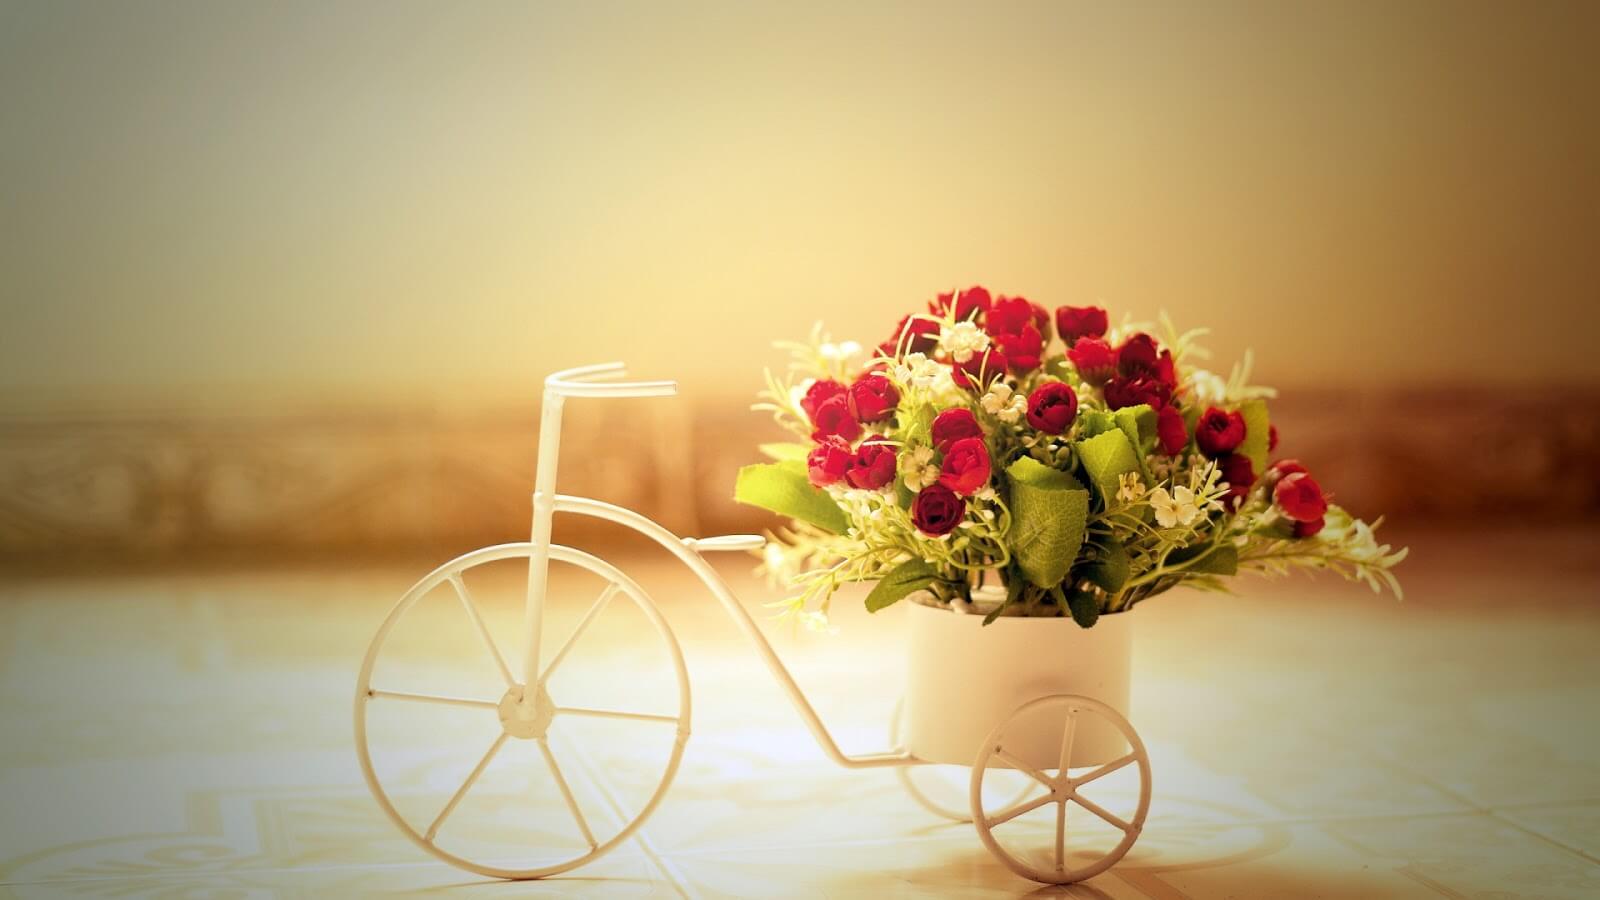 Цветы с доставкой, букеты розы в Минске, интернет магазин цветочный